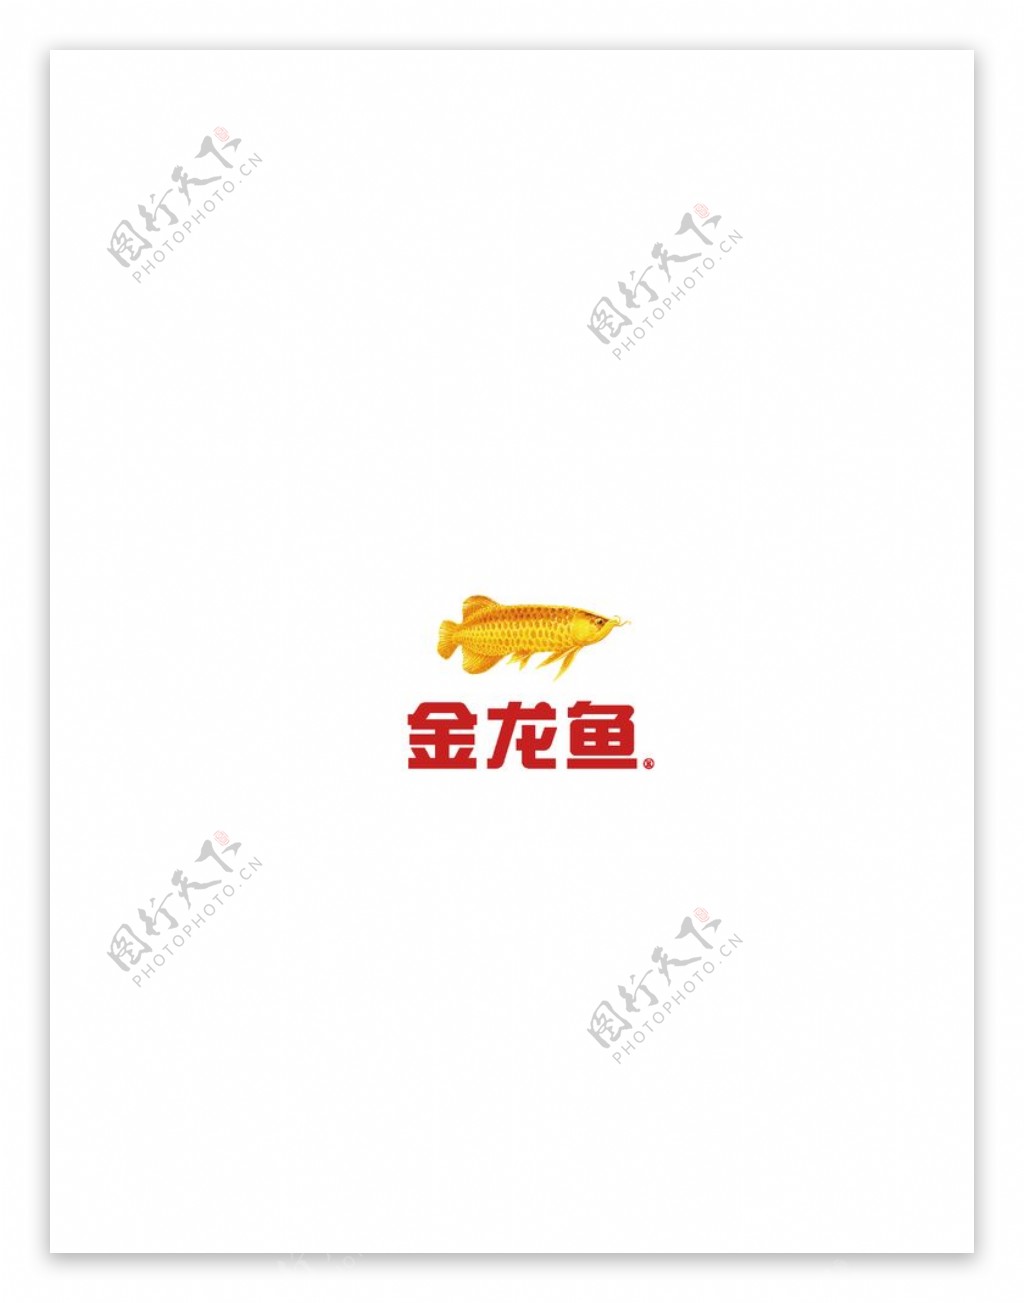 金龙鱼logo标志图片